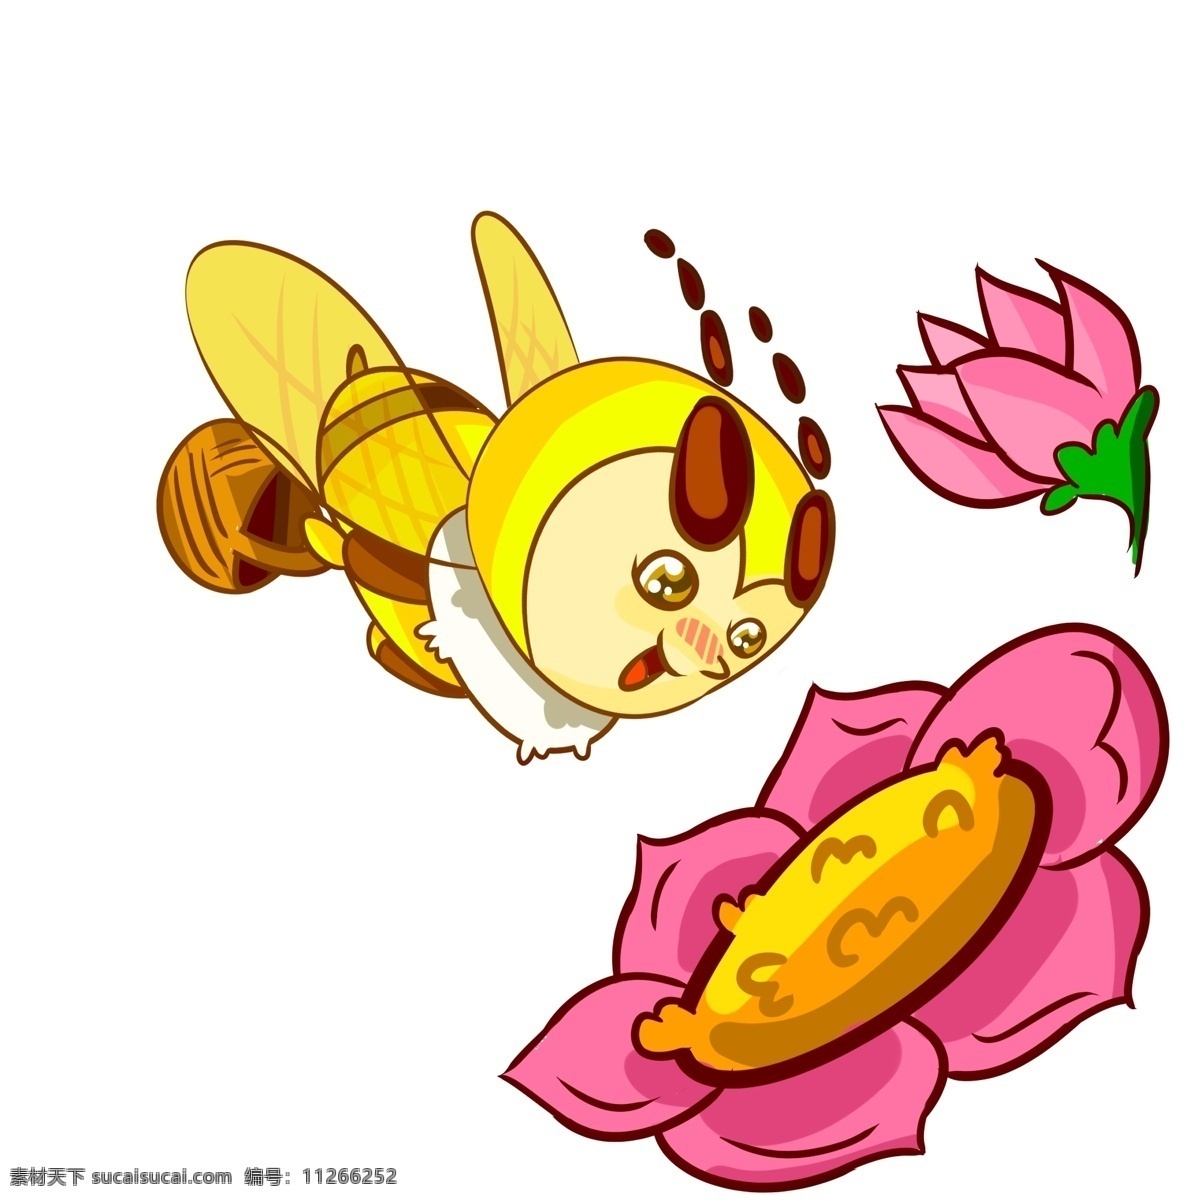 可爱 蜜蜂 采 花蜜 插画 漂亮的花朵 红色花朵 黄色小蜜蜂 可爱的蜜蜂 采花蜜插画 微笑的蜜蜂 蜜蜂插画